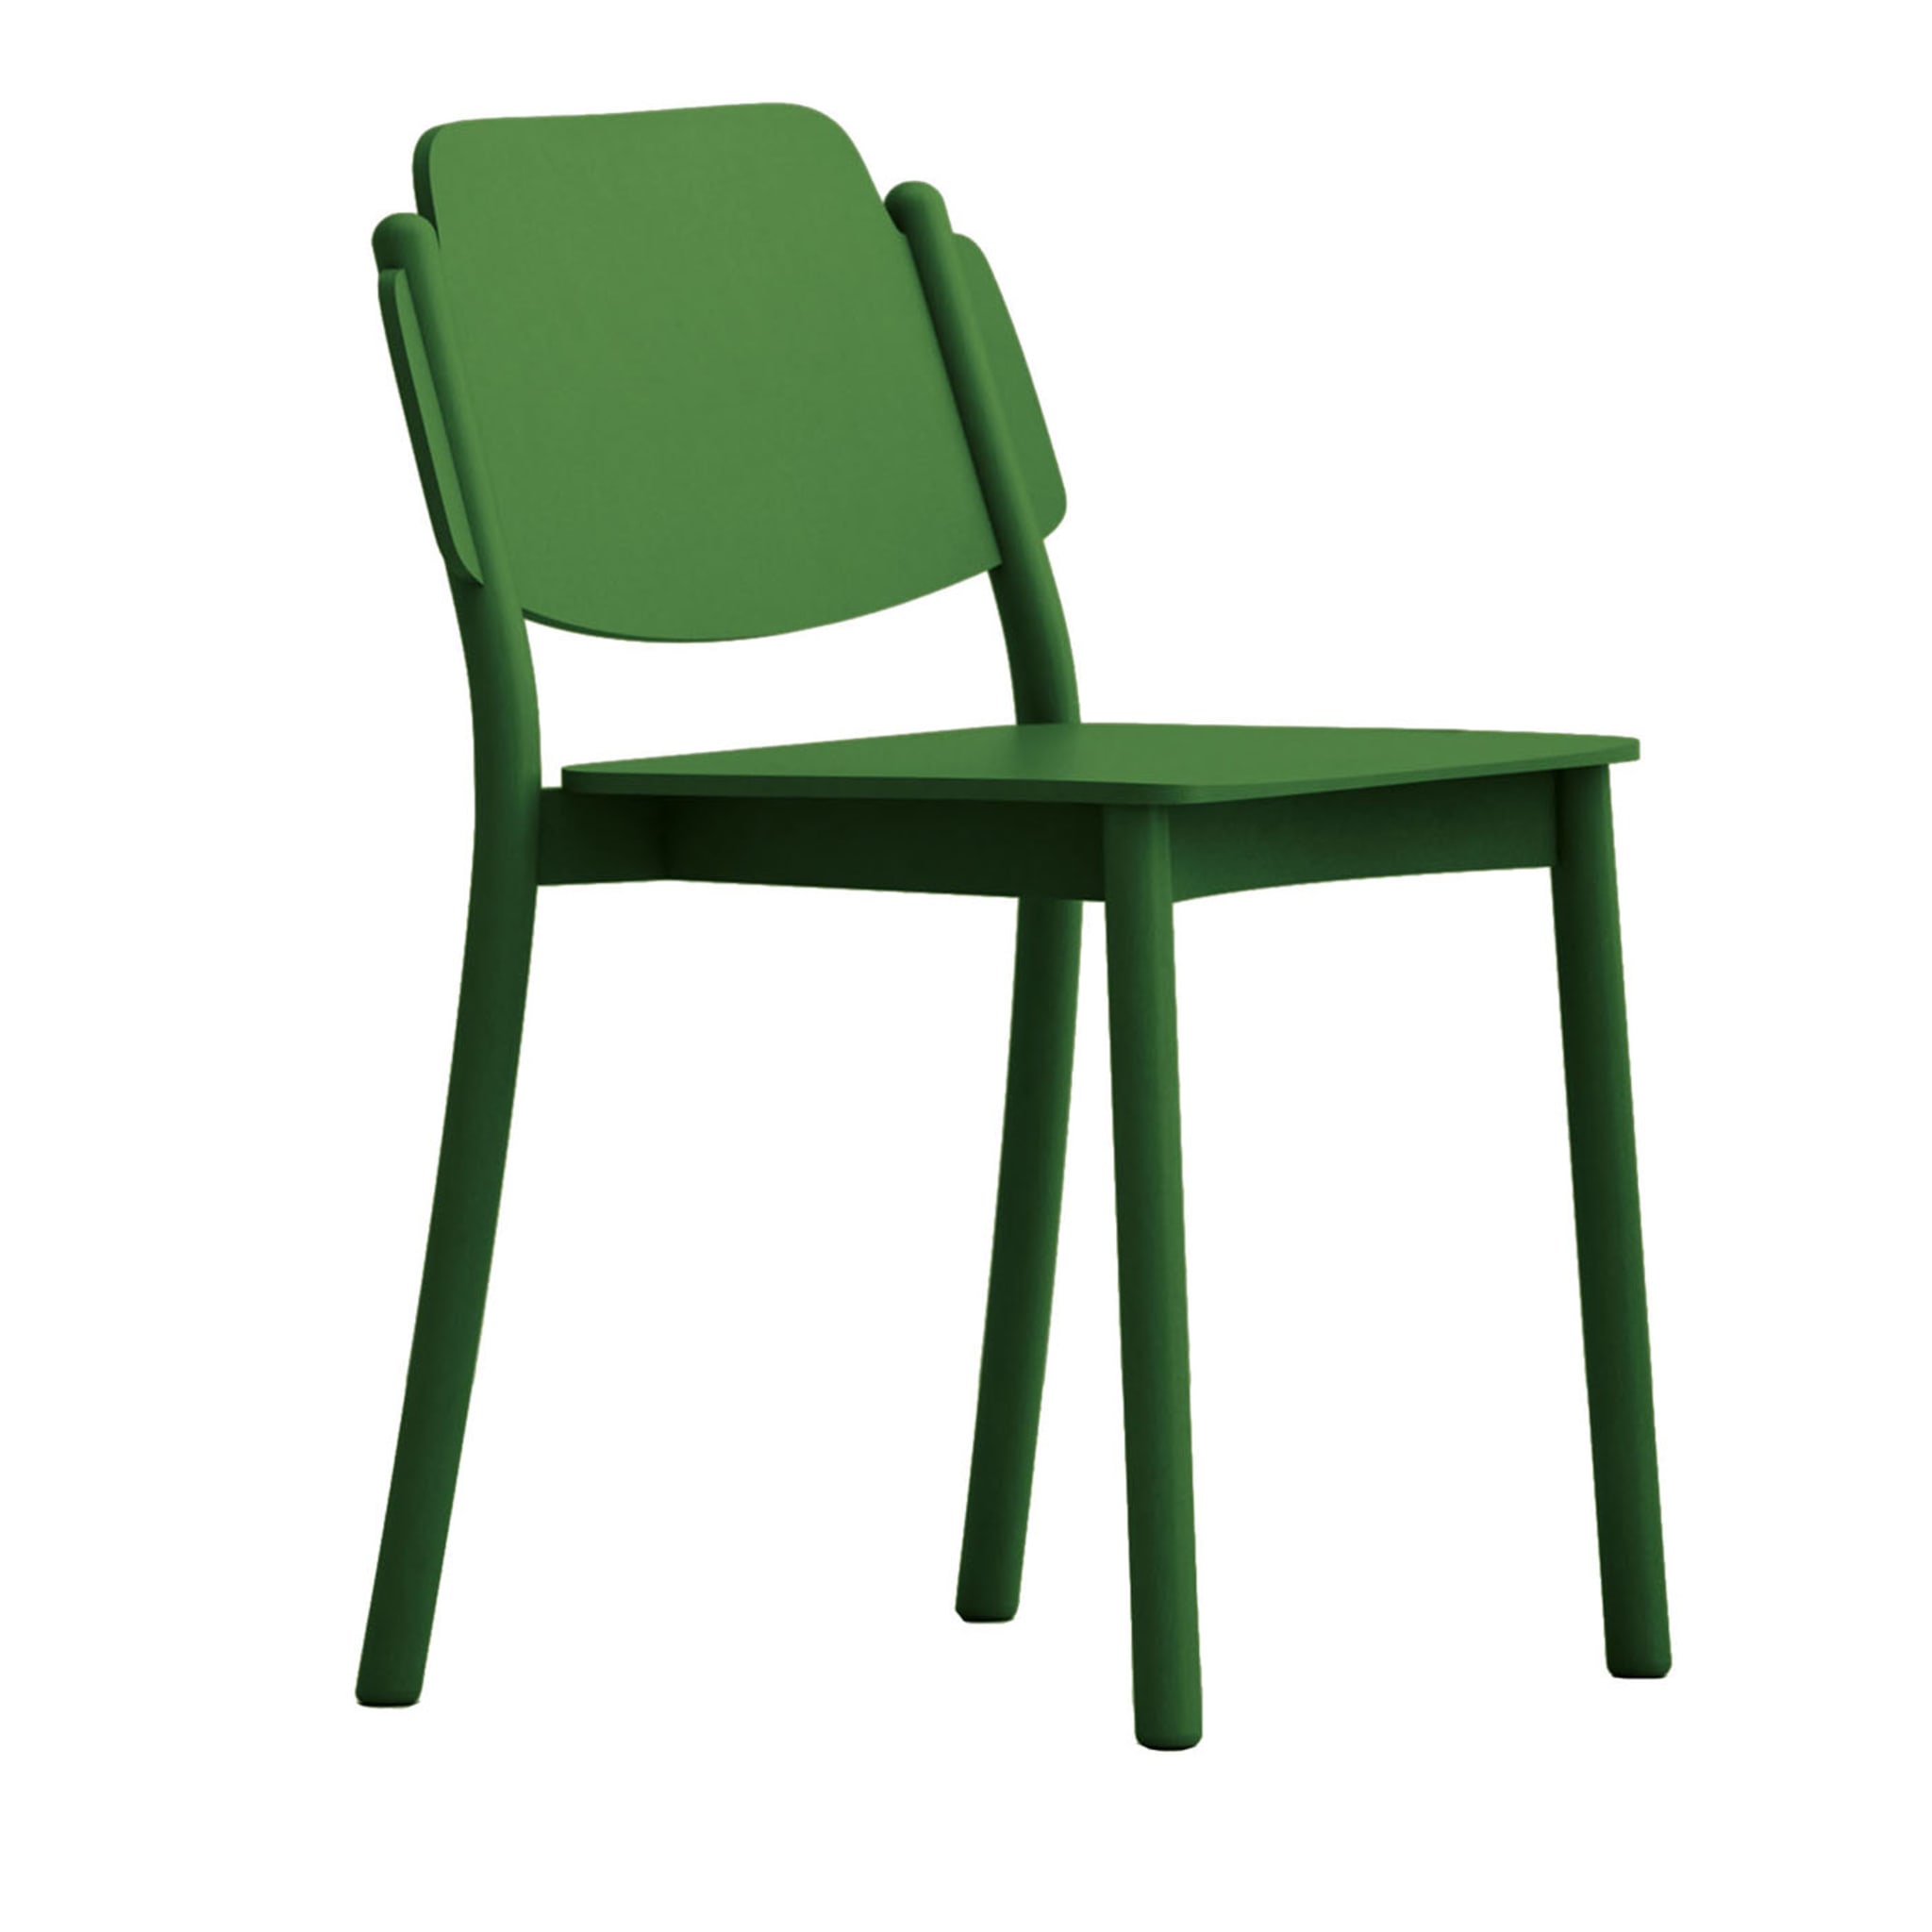 Mein Stuhl Grüner Stuhl von Emilio Nanni - Hauptansicht